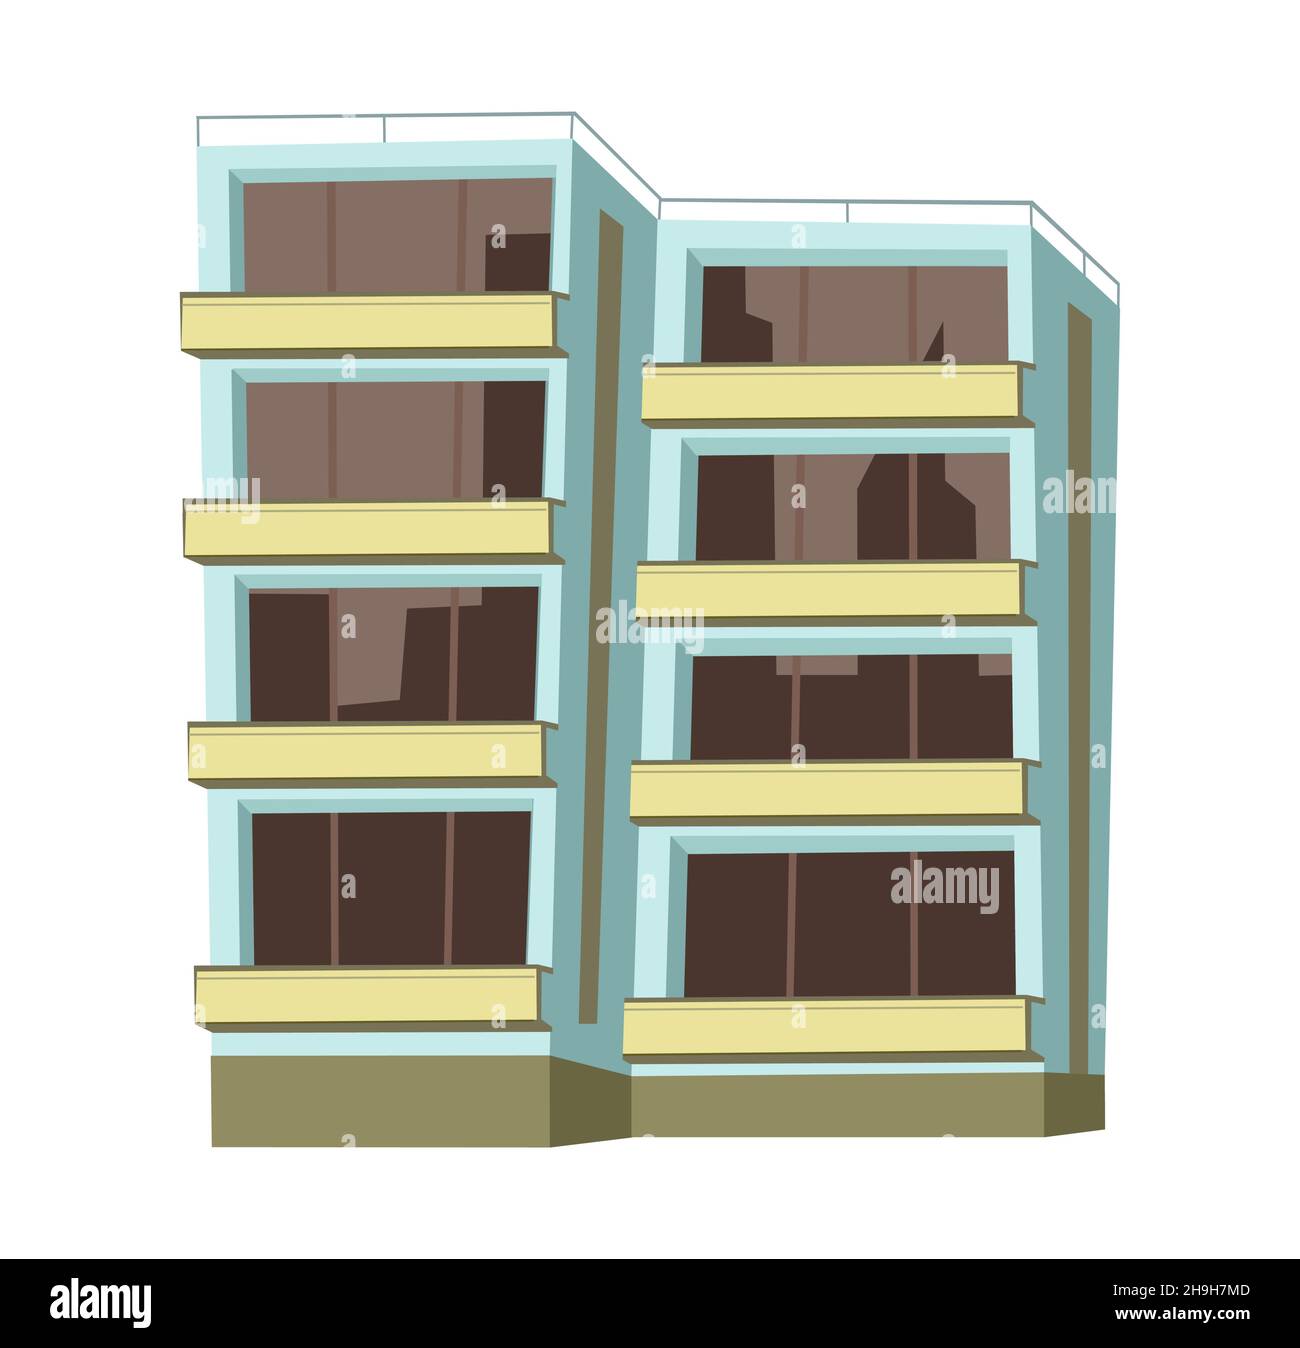 Stadtgebäude. Cartoon-Spaß flach Stil. Isoliert auf weißem Hintergrund. Wohngebäude mit Fenstern und Balkonen. Vektor. Stock Vektor